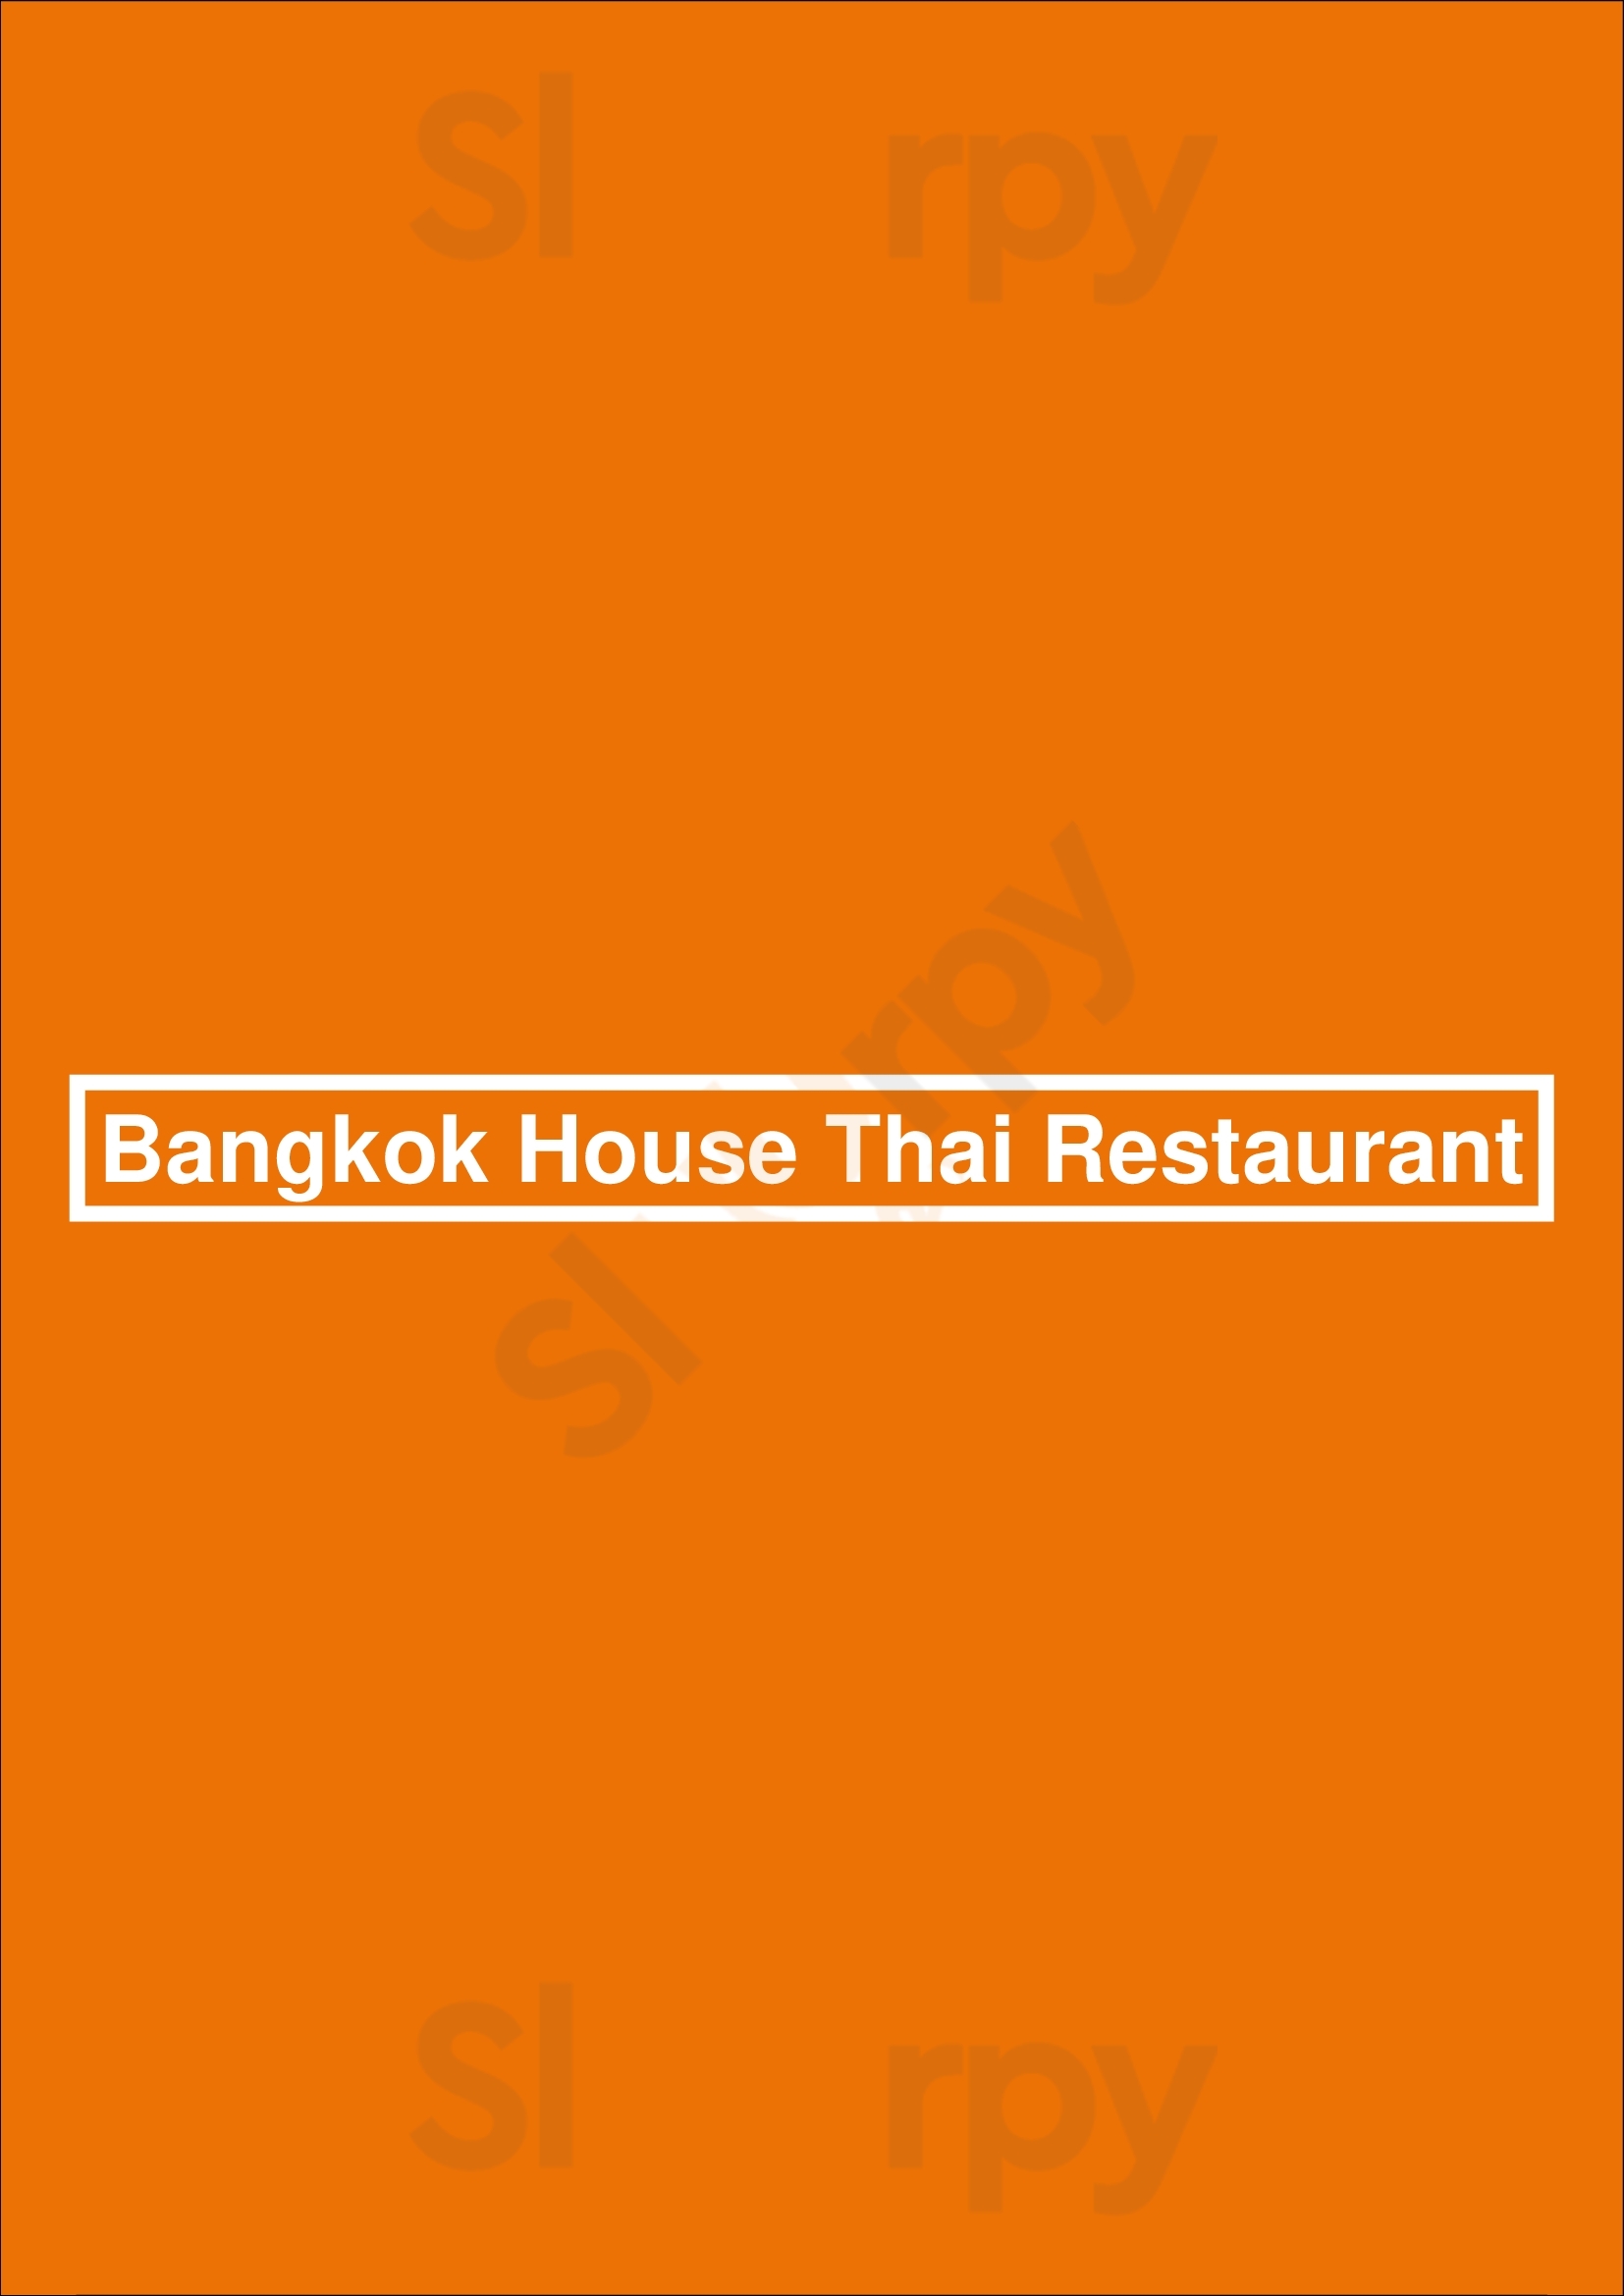 Bangkok House Thai Restaurant Fort Worth Menu - 1